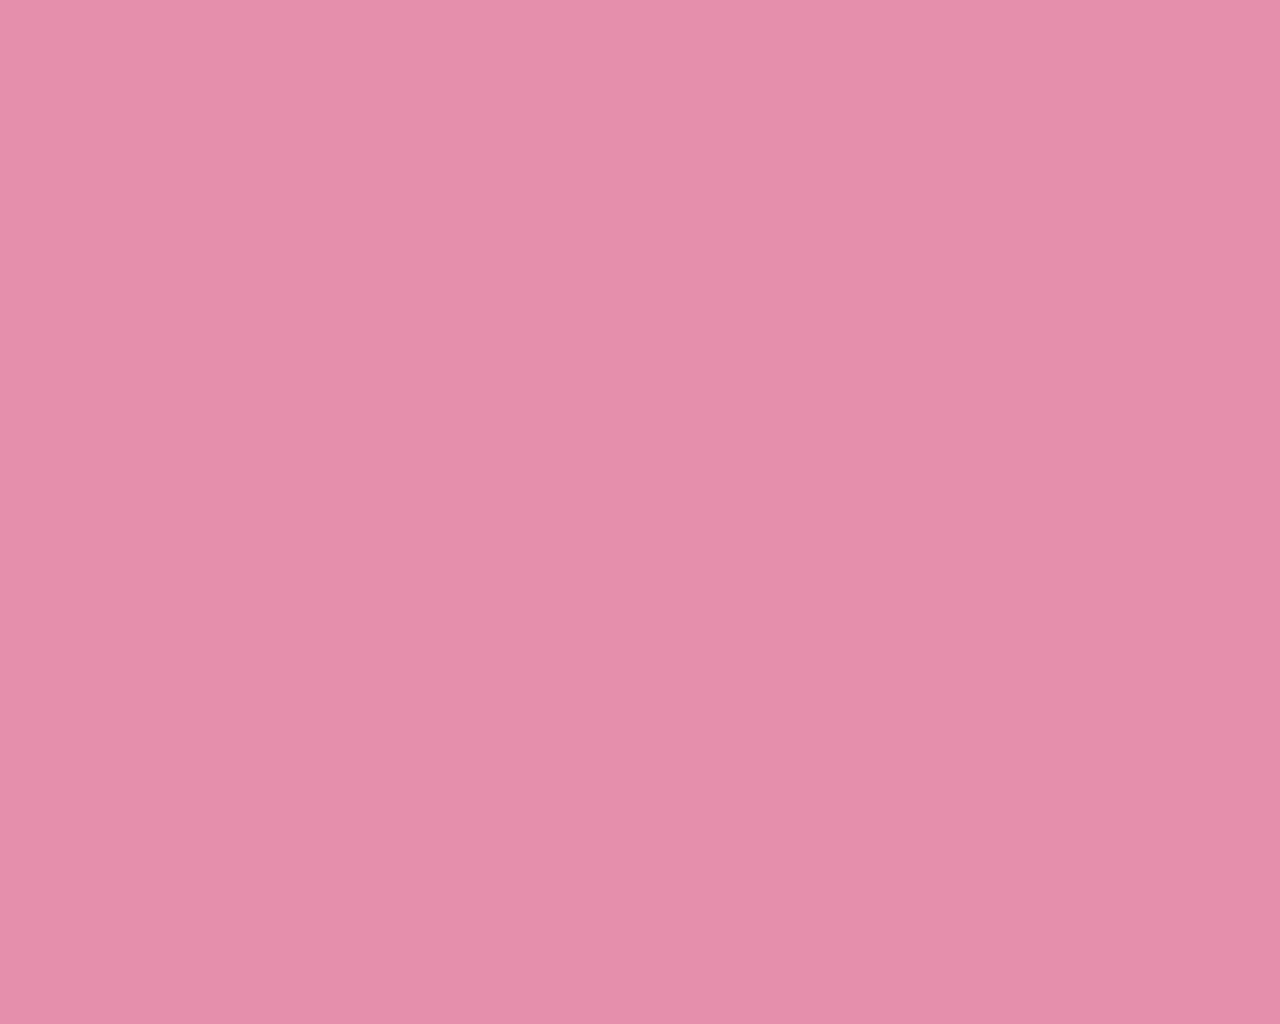 Solid Light Pink Wallpaper 1280x1024 light thulian pink 1280x1024